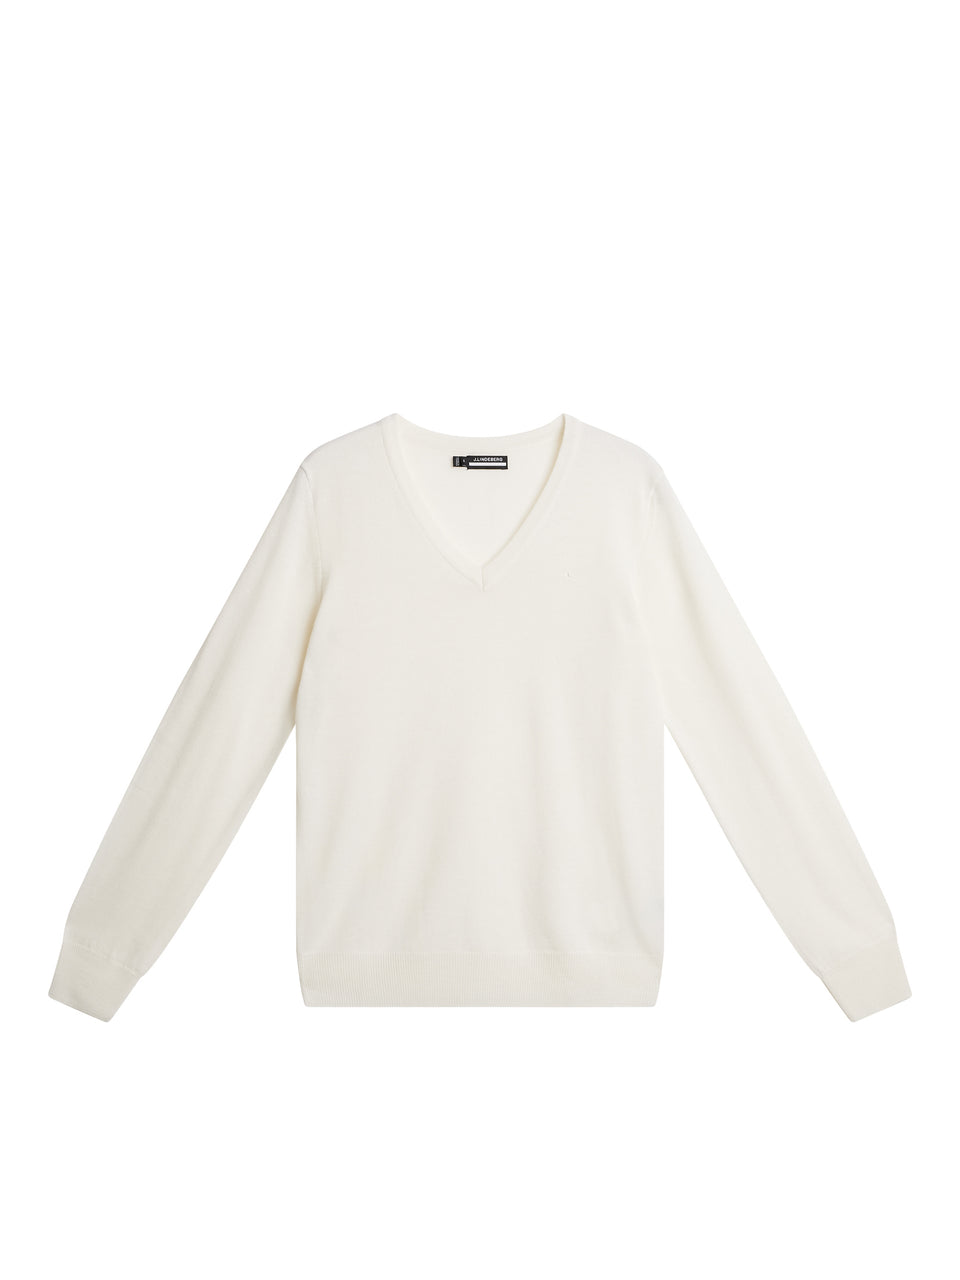 Amaya Knitted Sweater / White